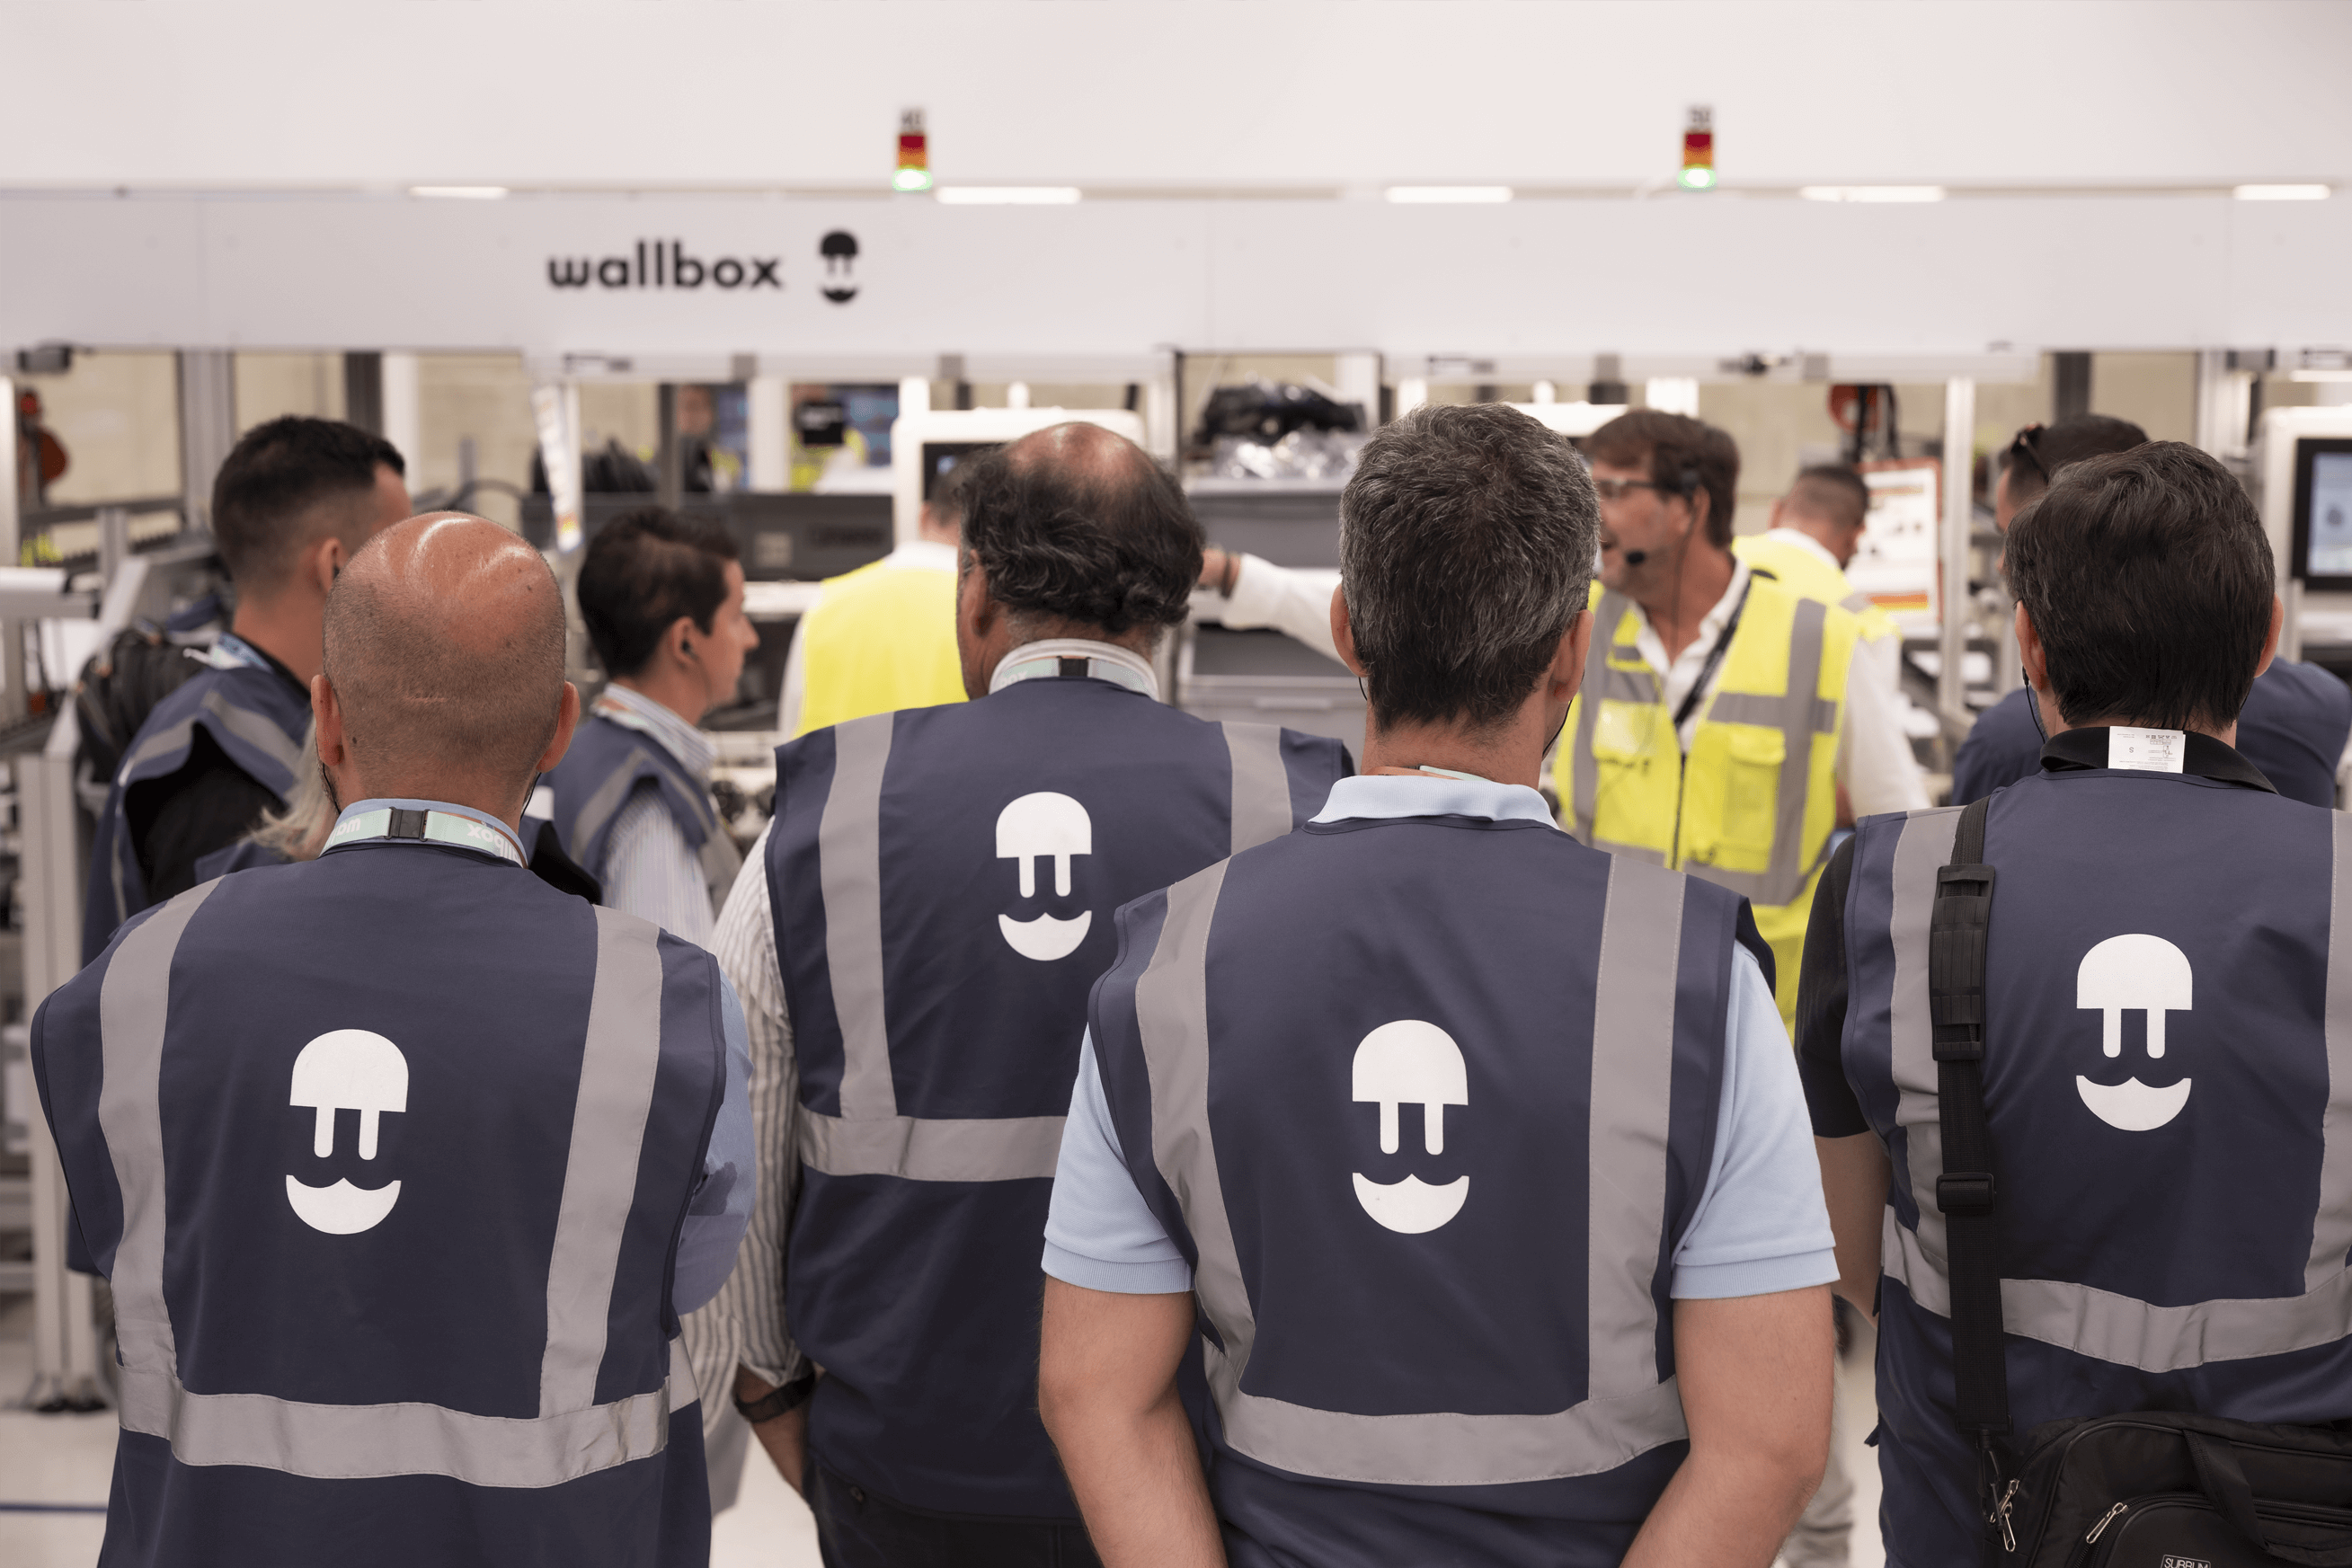  Wallbox presenta Supernova ante 50 clientes internacionales en su nueva planta de Barcelona